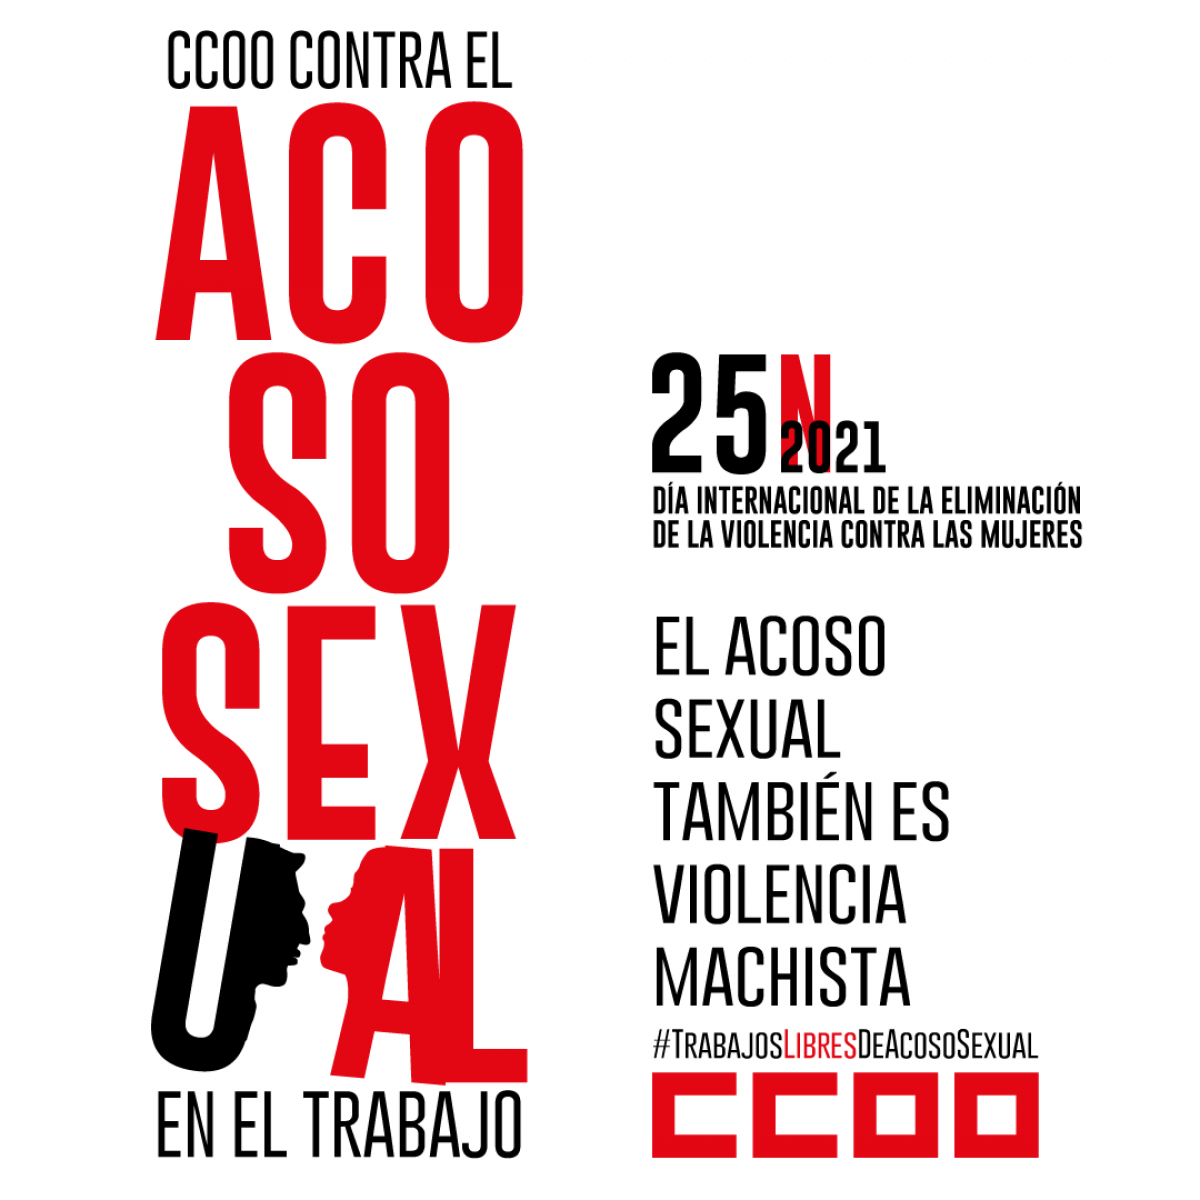 CCOO contra el acoso sexual en el trabajo